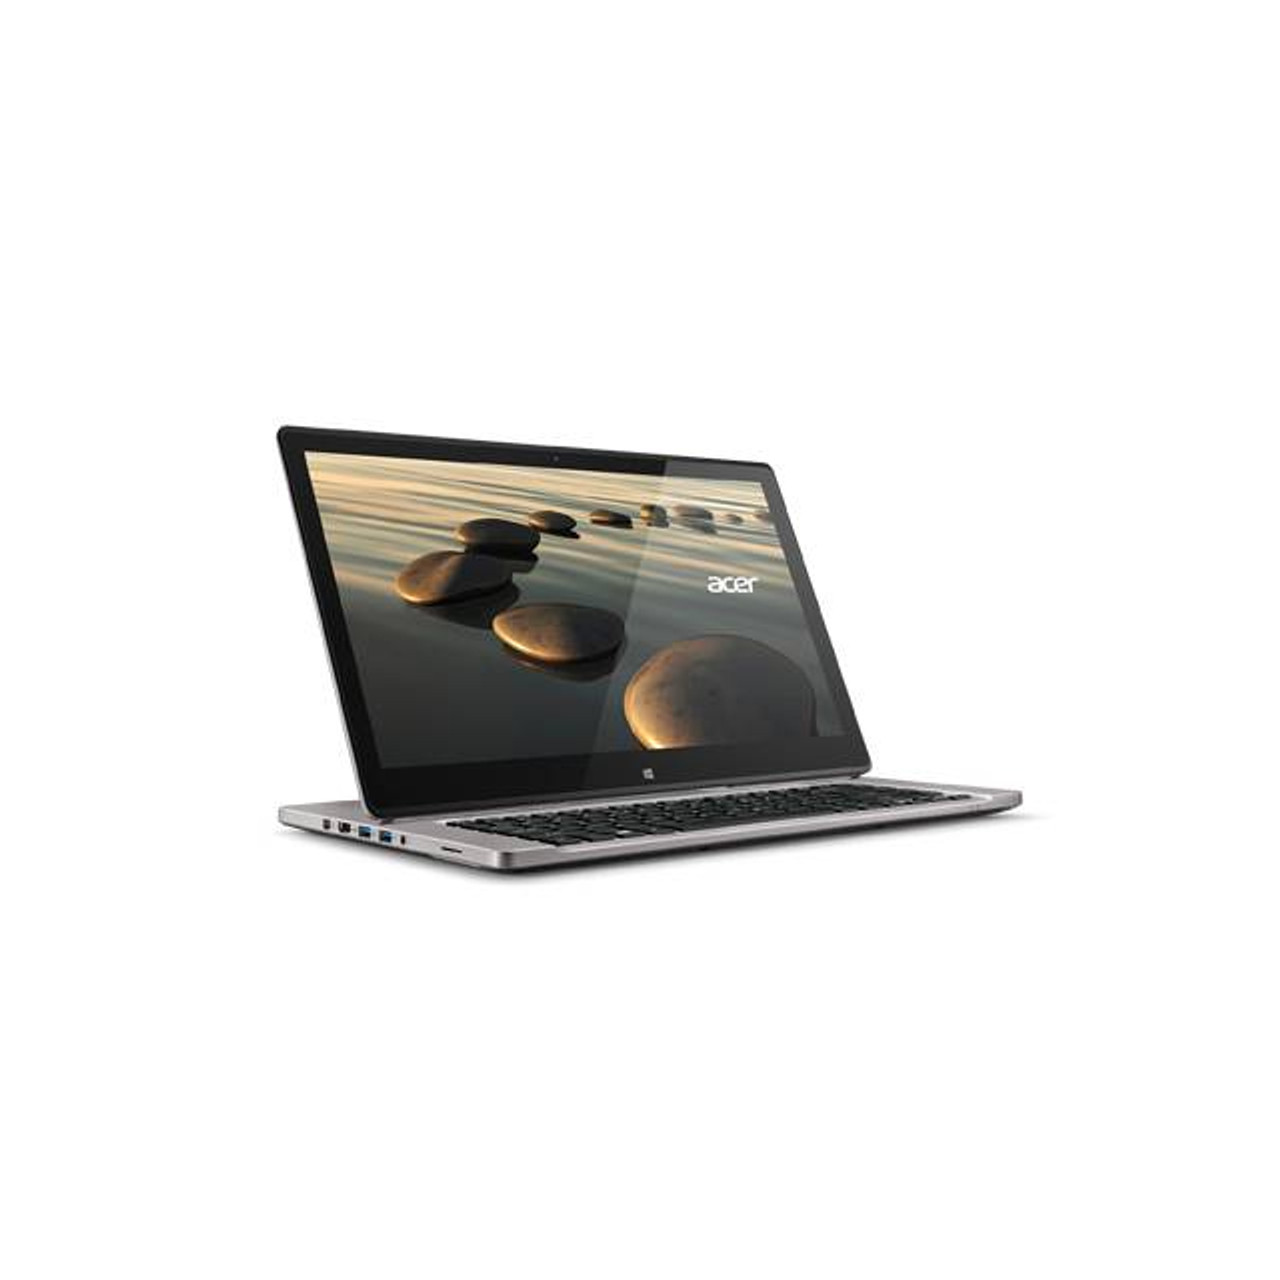 Acer Aspire R7-572-5893 15.6 inch Touchscreen Intel Core i5-4210U 1.7GHz/ 8GB DDR3L/ 1TB HDD/ USB3.0/ Windows 8.1 Notebook (Gray)